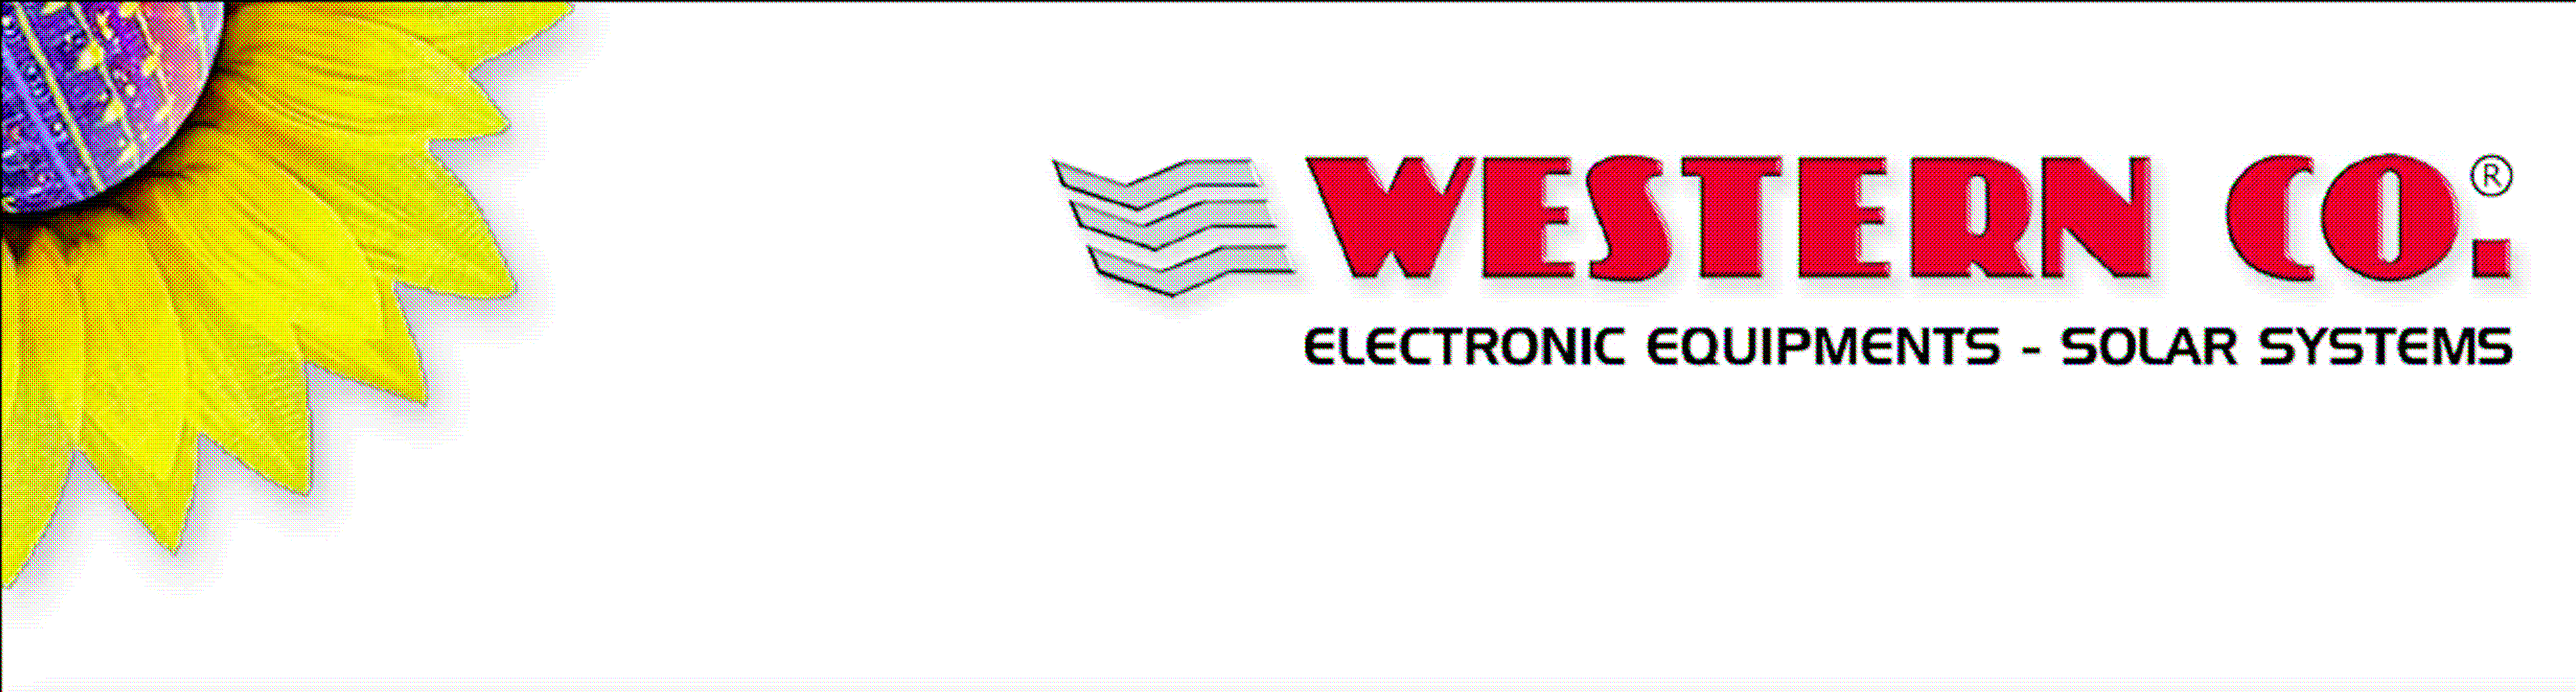 Western Co.